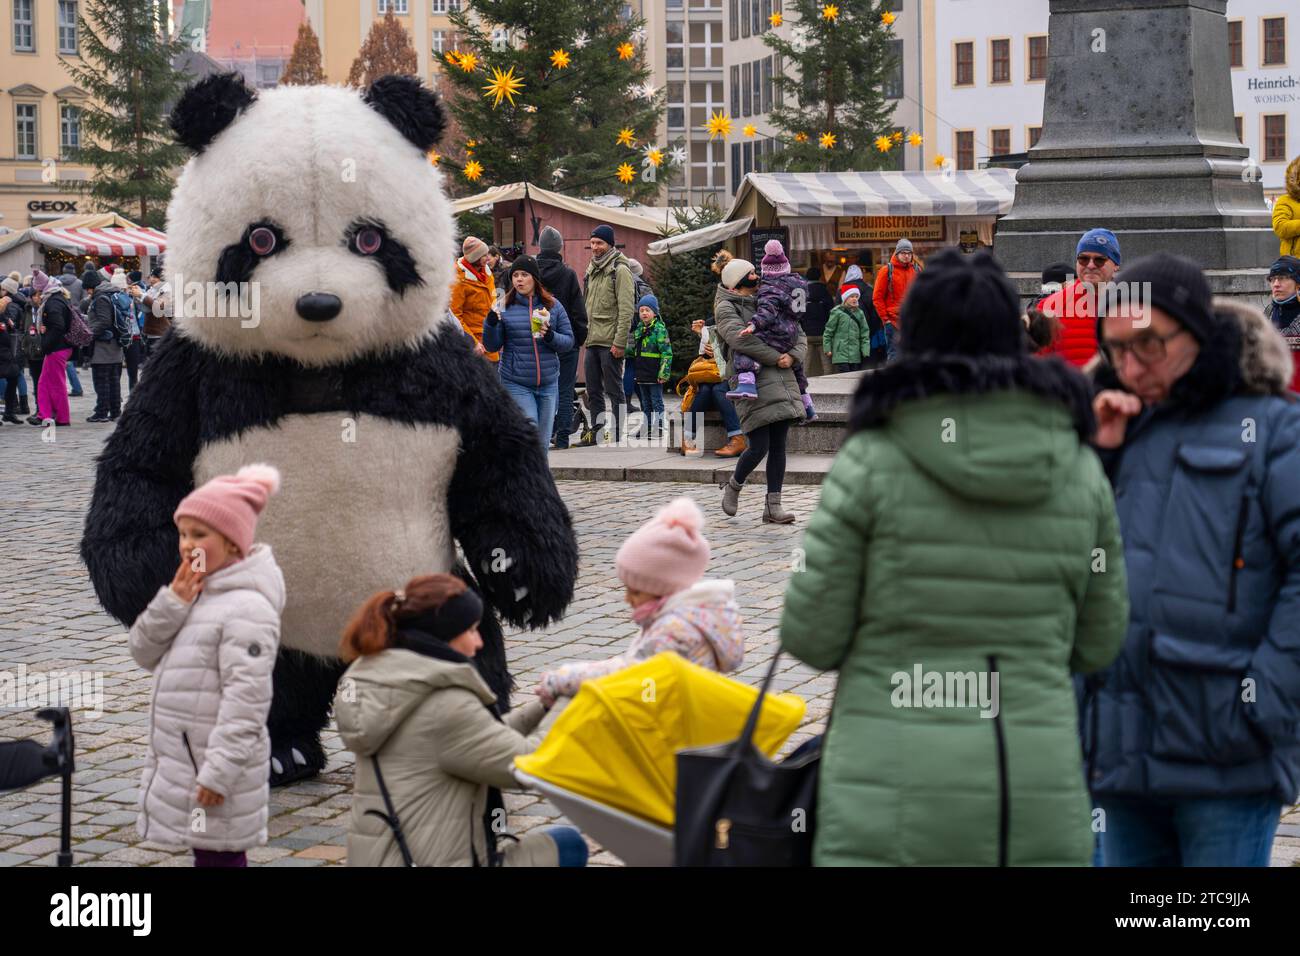 Ein überlebensgroßer Pandabär auf dem Neumarkt vor der Frauenkirche in der Altstadt in Dresden. *** A larger-than-life panda bear on the Neumarkt in front of the Frauenkirche in Dresdens Old Town Credit: Imago/Alamy Live News Stock Photo